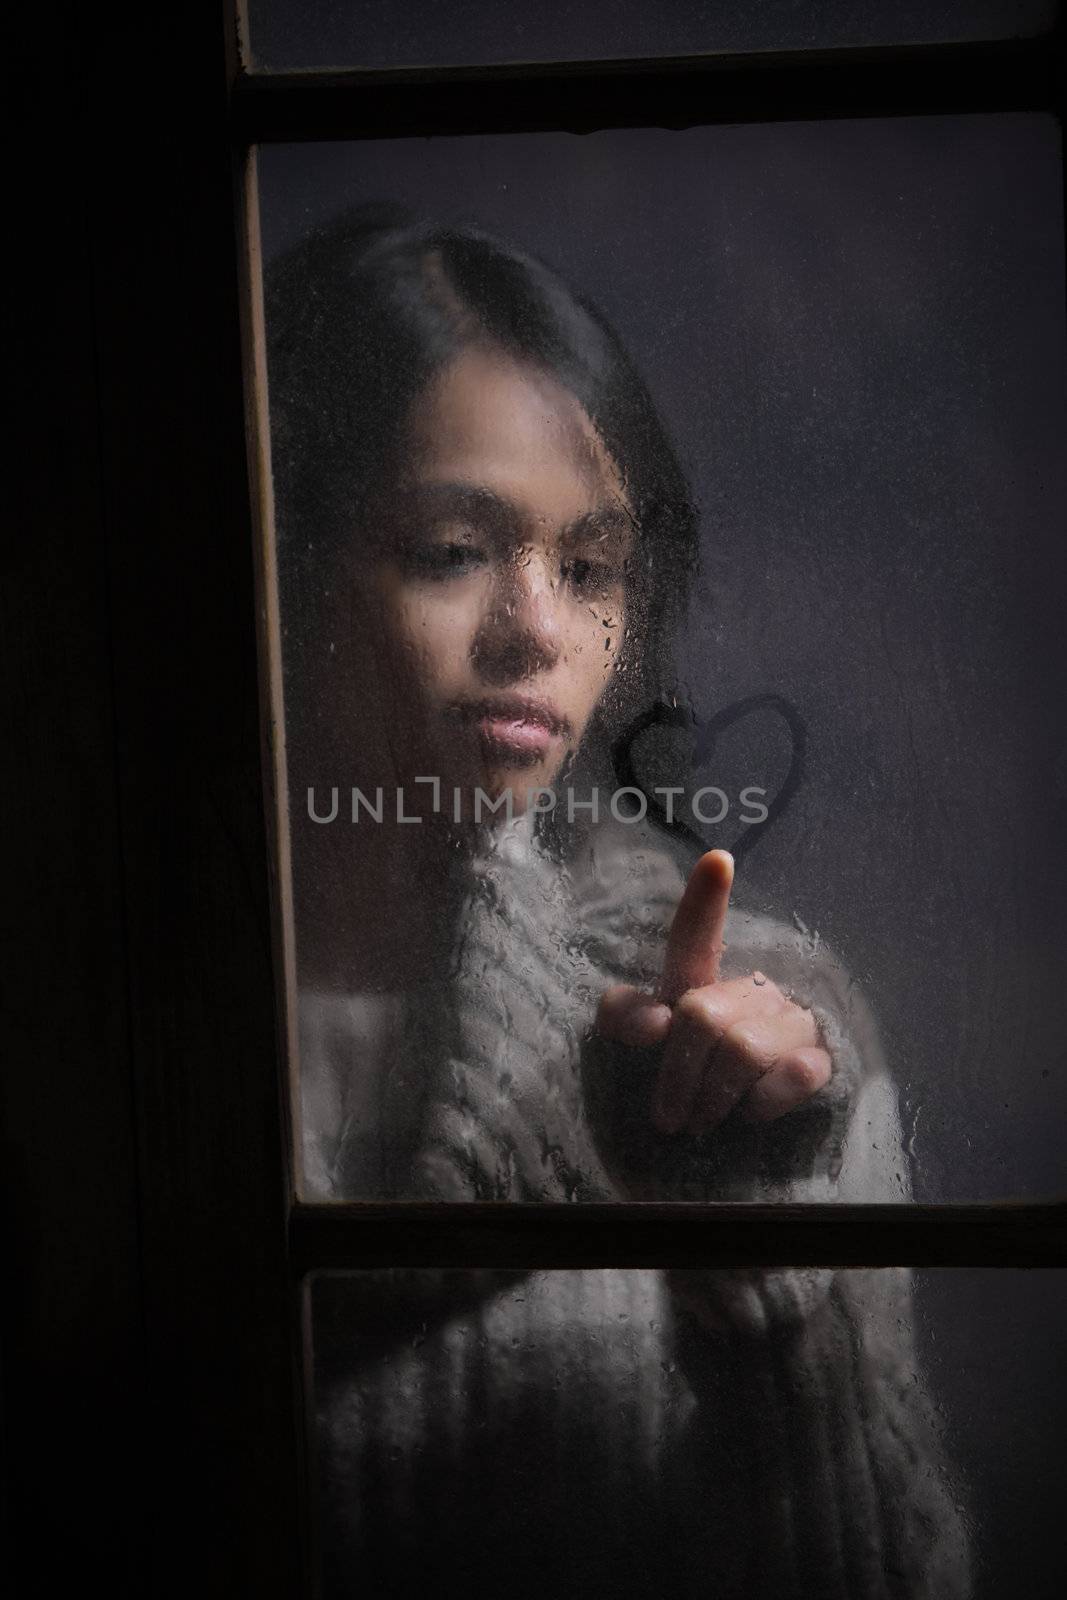 Portrait of woman drawing heart on wet window, focus on rain drop